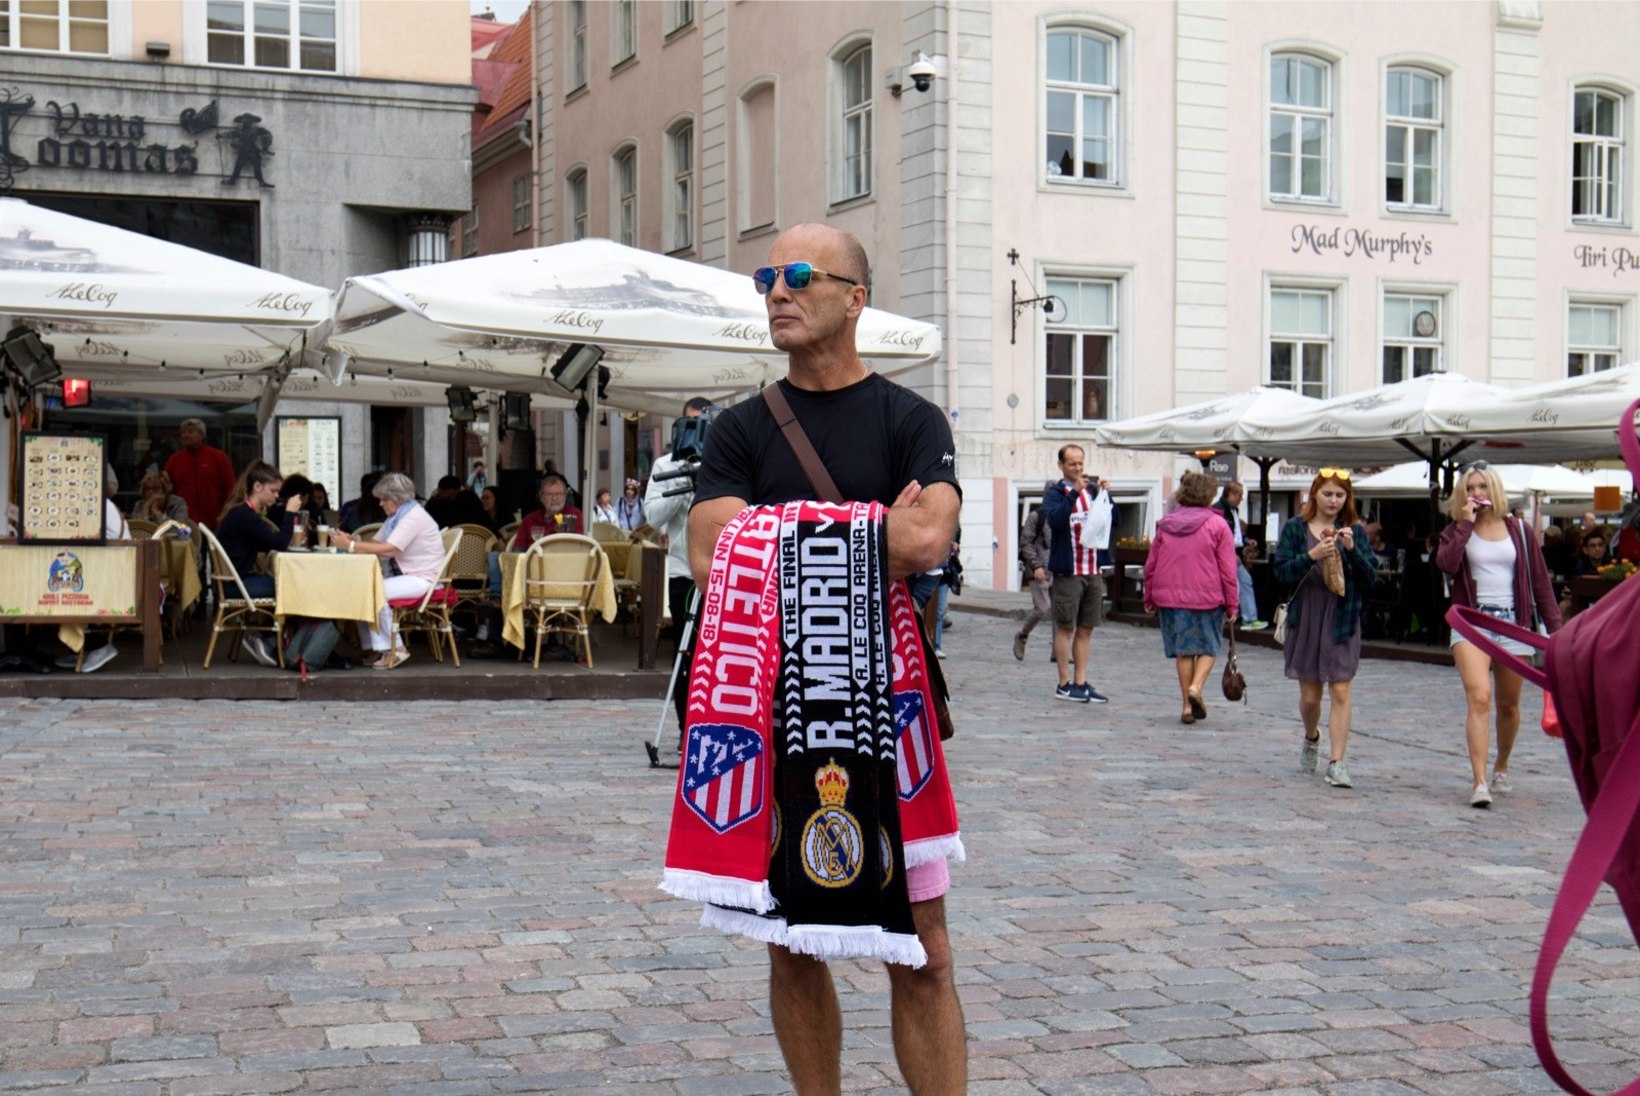 Inglane sõitis Tallinnasse jalgpallisalle müüma: kui hästi läheb, saan tasuta puhkuse